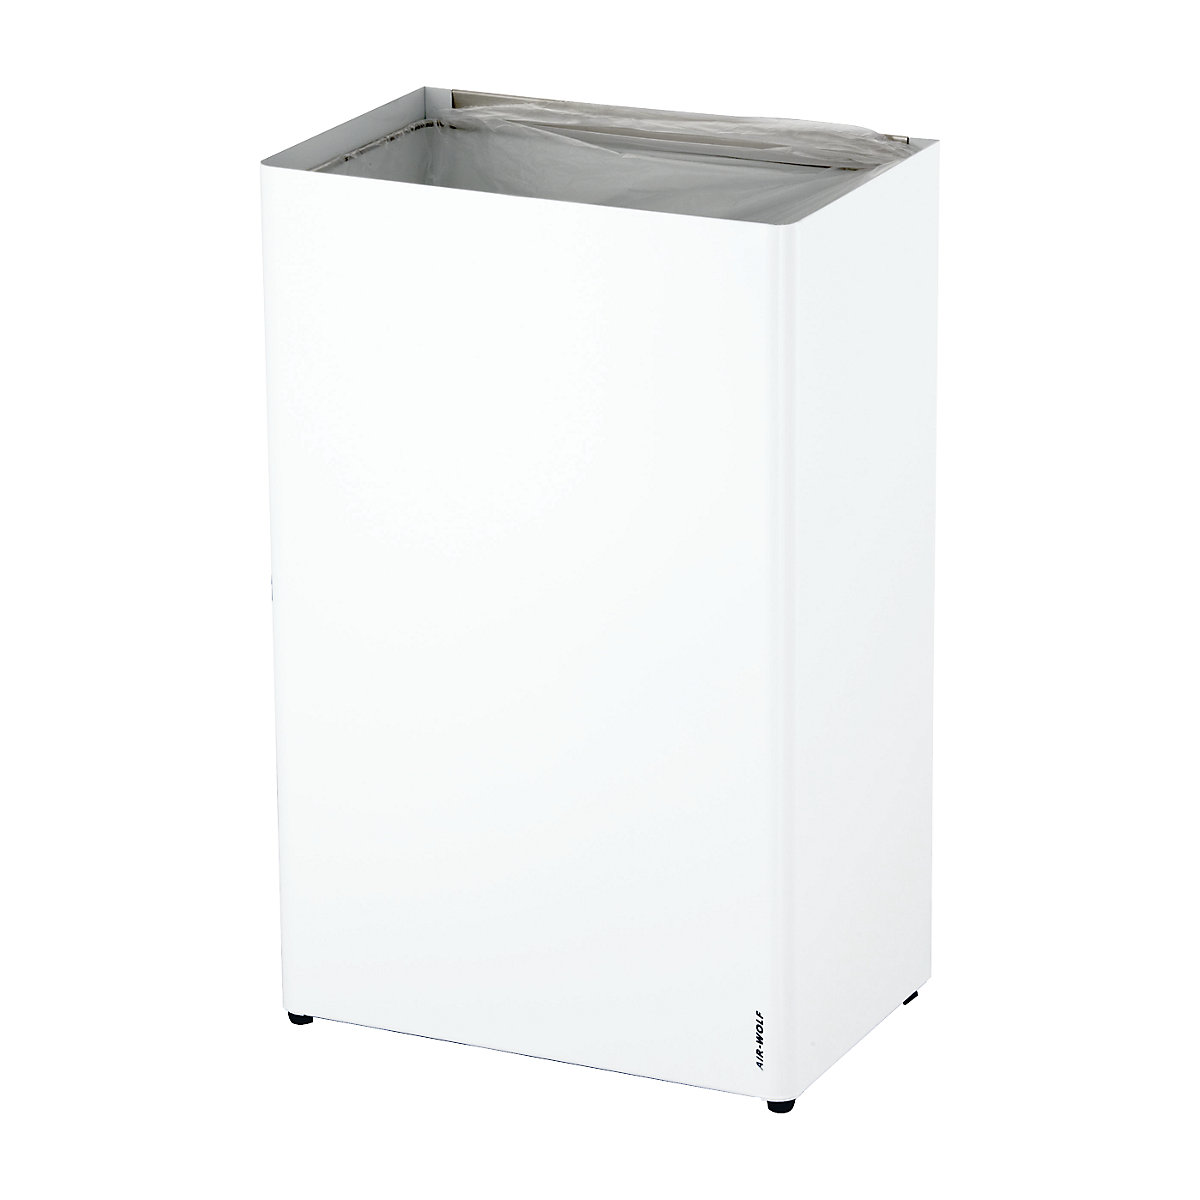 Abfallbehälter AIR-WOLF, Volumen 60 l, BxHxT 389 x 612 x 250 mm, Edelstahl, weiß pulverbeschichtet-2